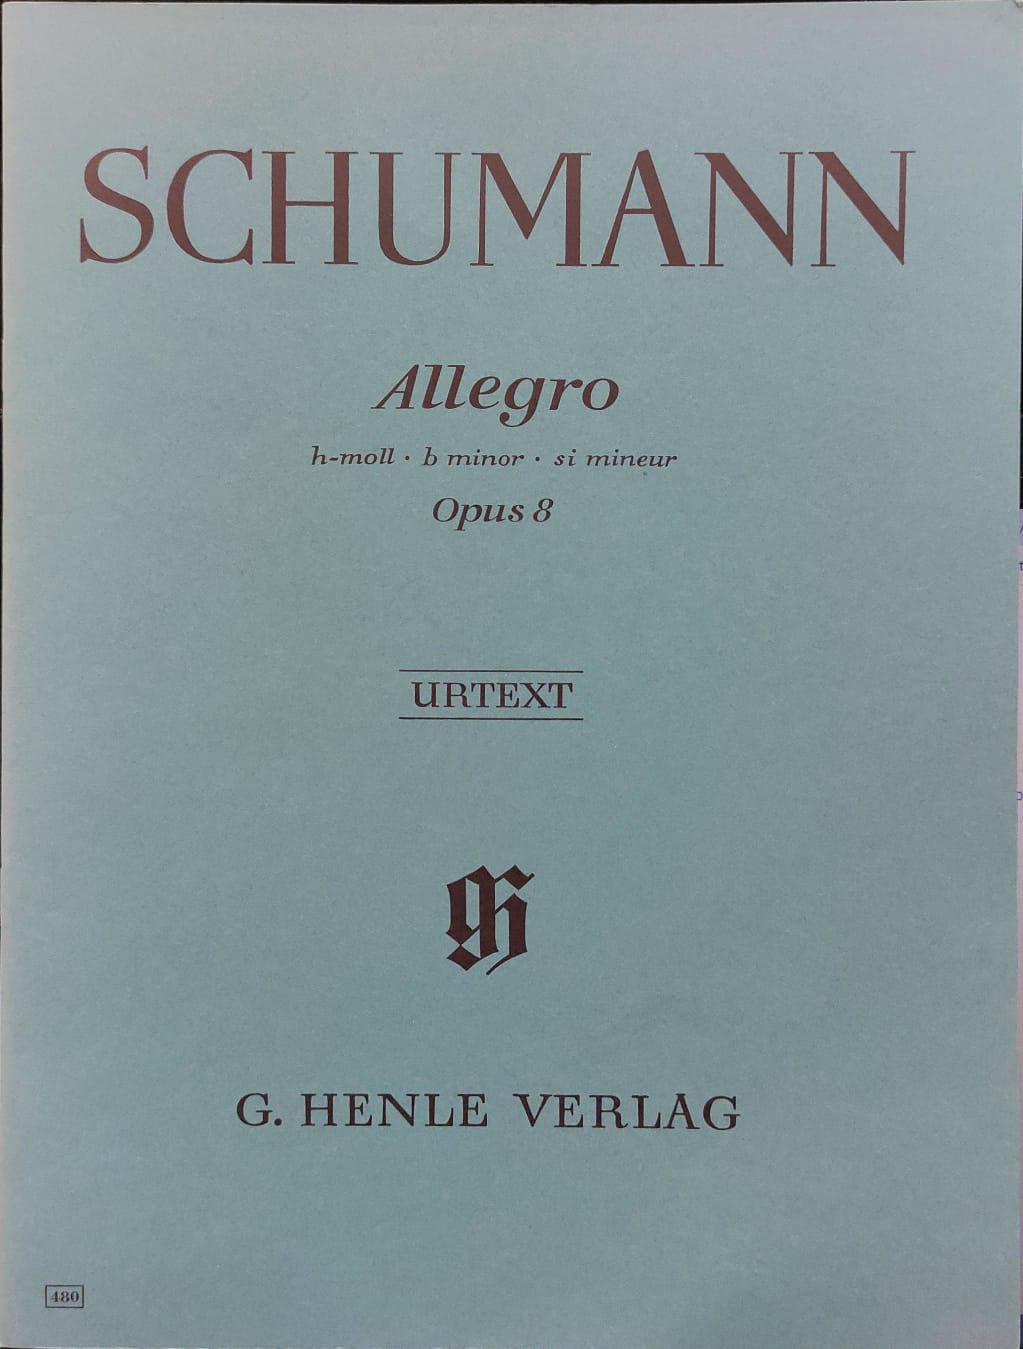 ROBERT SCHUMANN: Allegro b minor op. 8